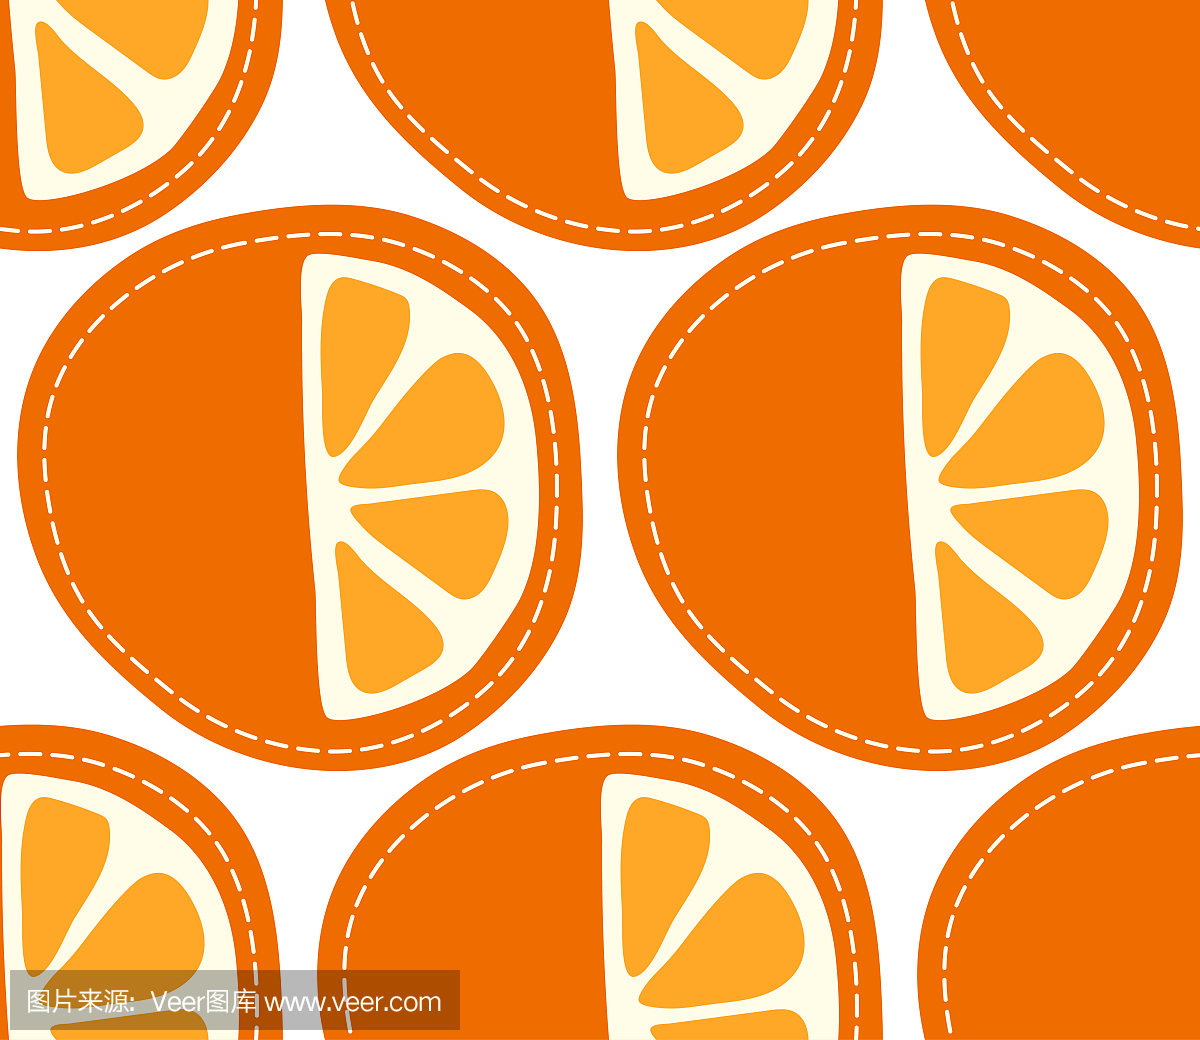 橙色无缝模式在透明背景下,切片的柑橘类水果